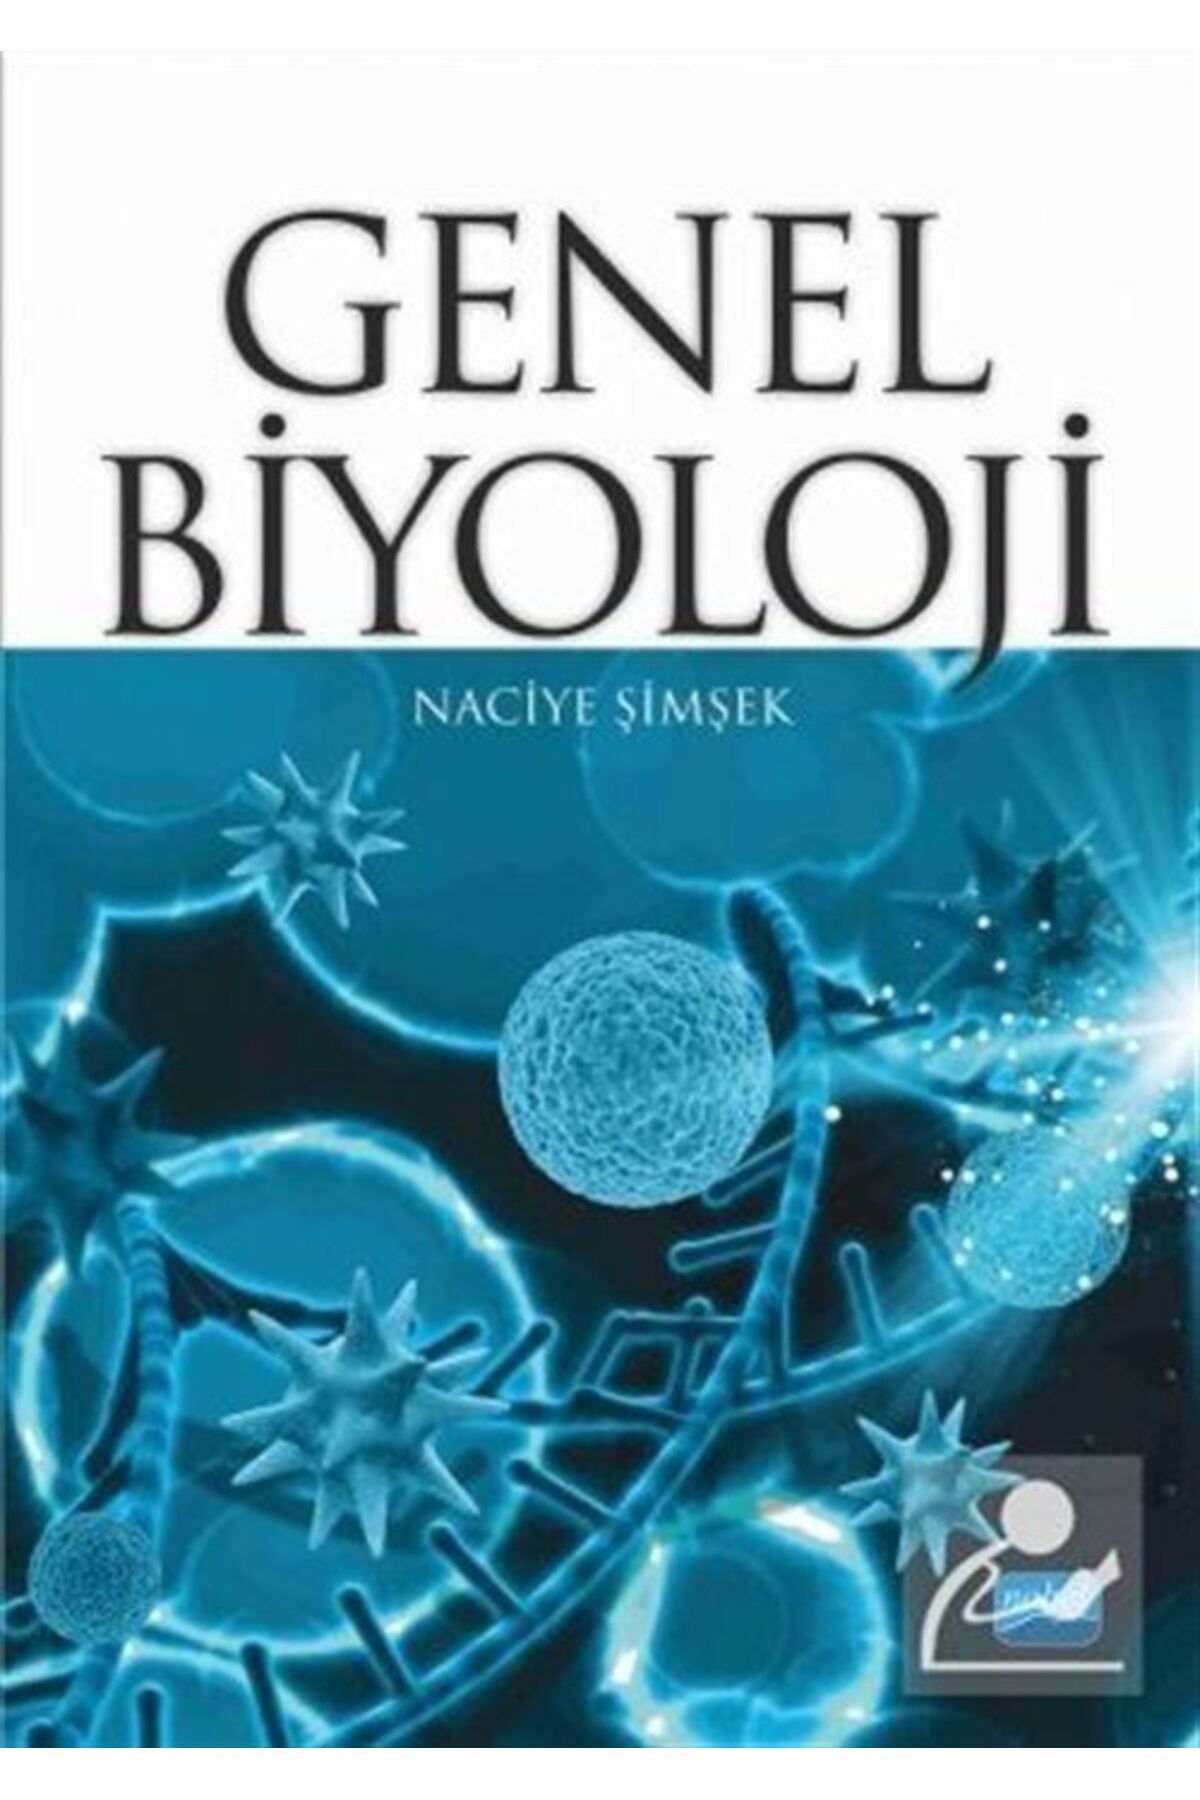 Nobel Akademik Yayıncılık Genel Biyoloji (naciye Şimşek)